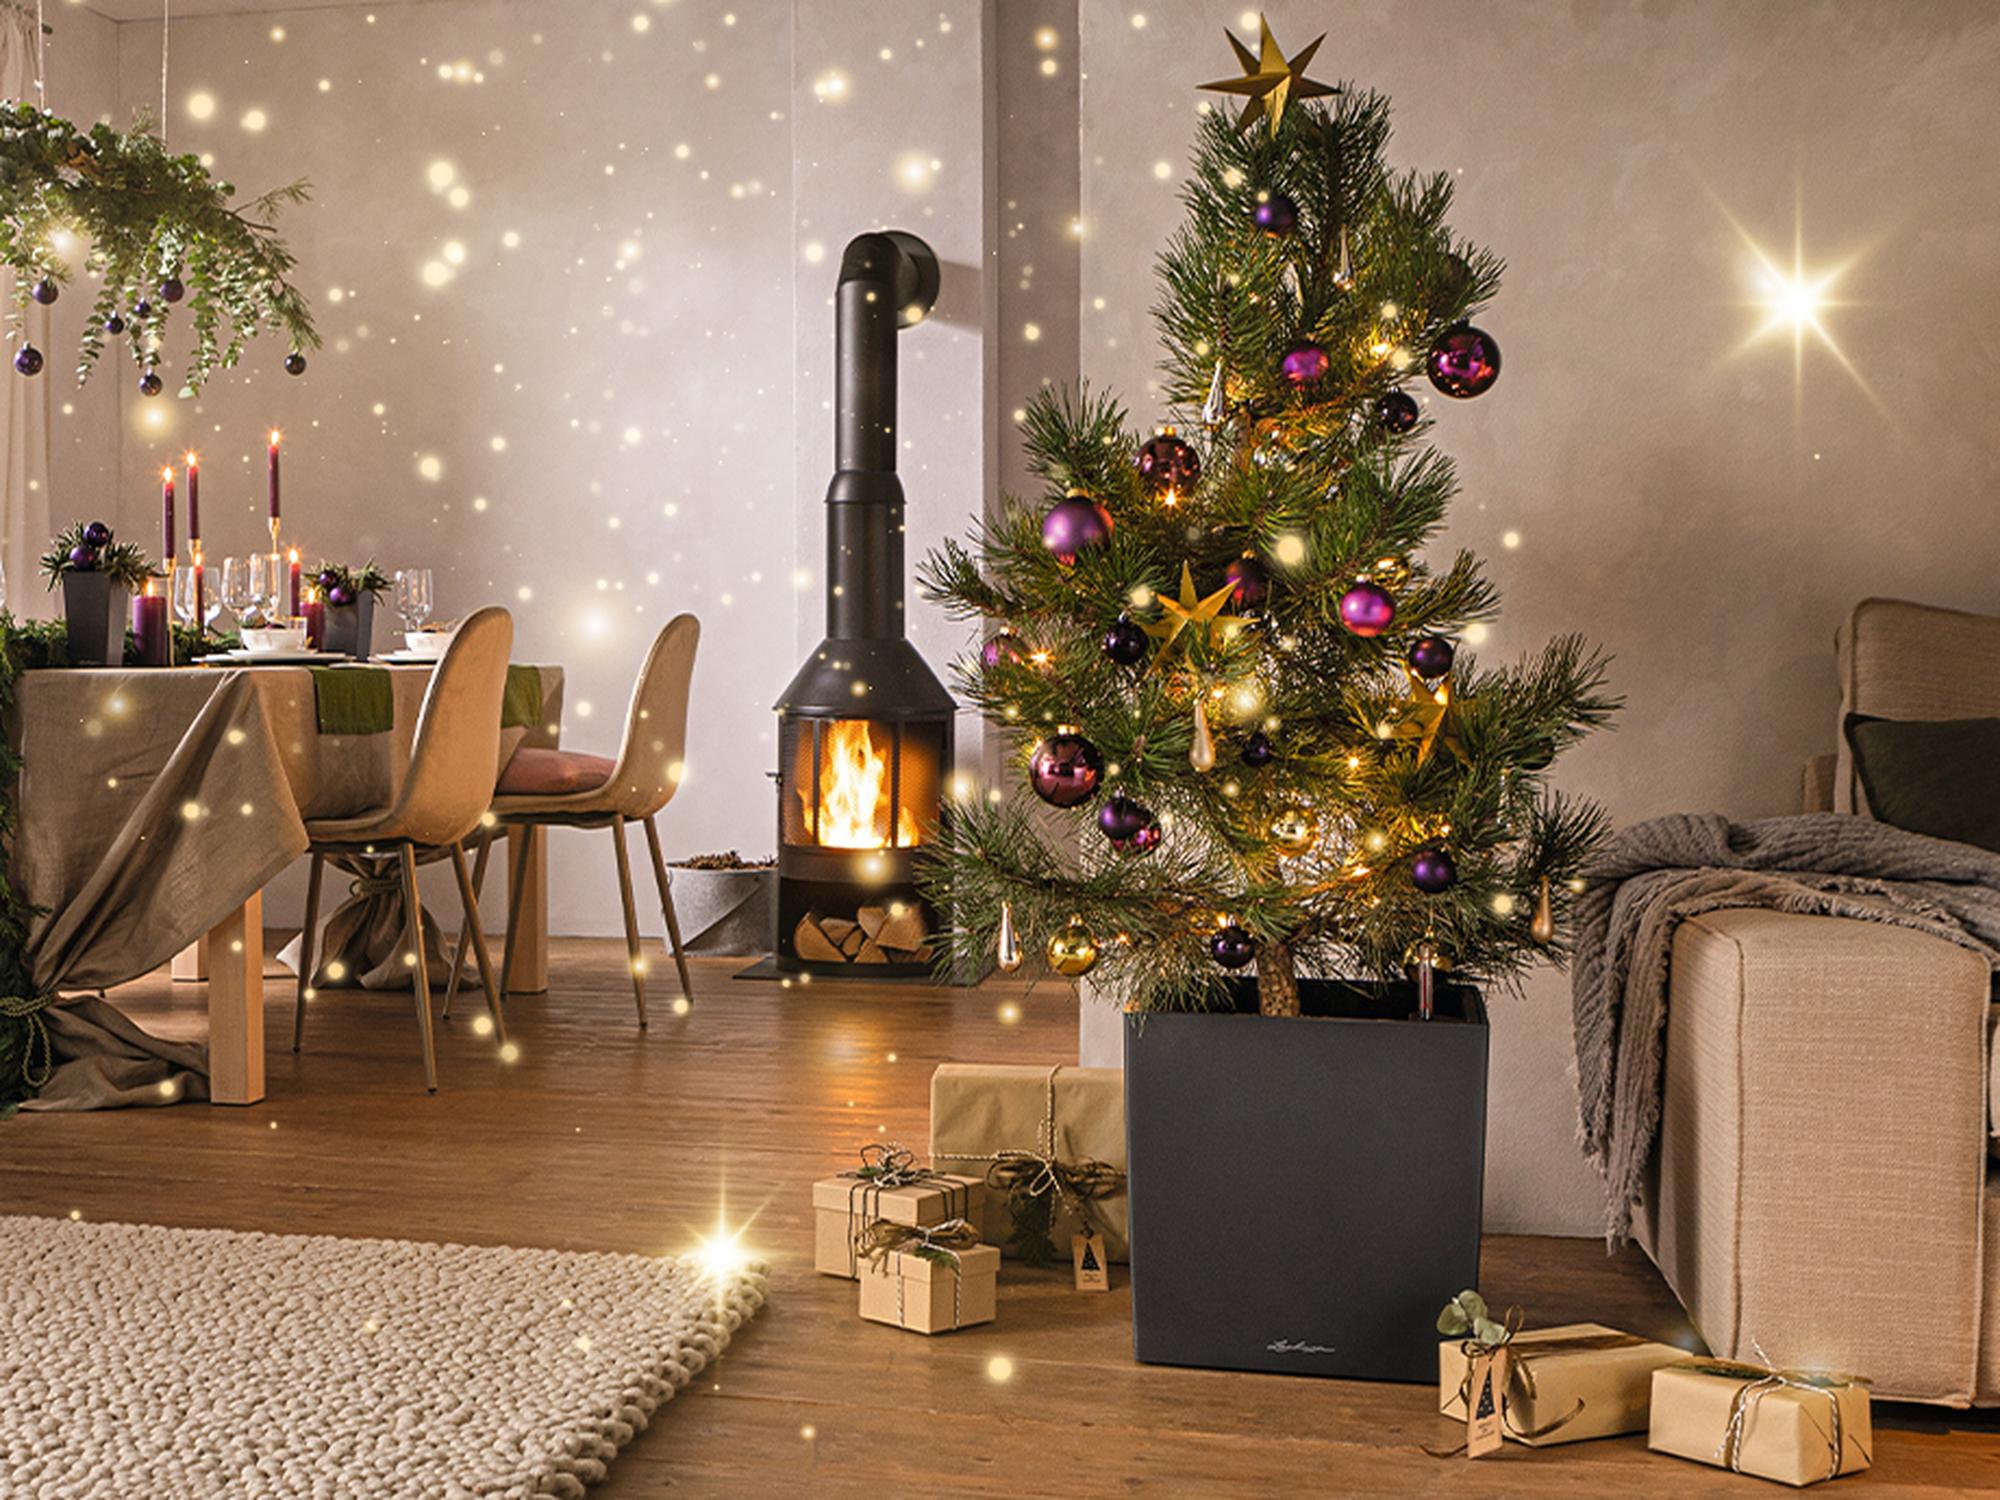 Betover uw huis voor een heel bijzonder kerstfeest